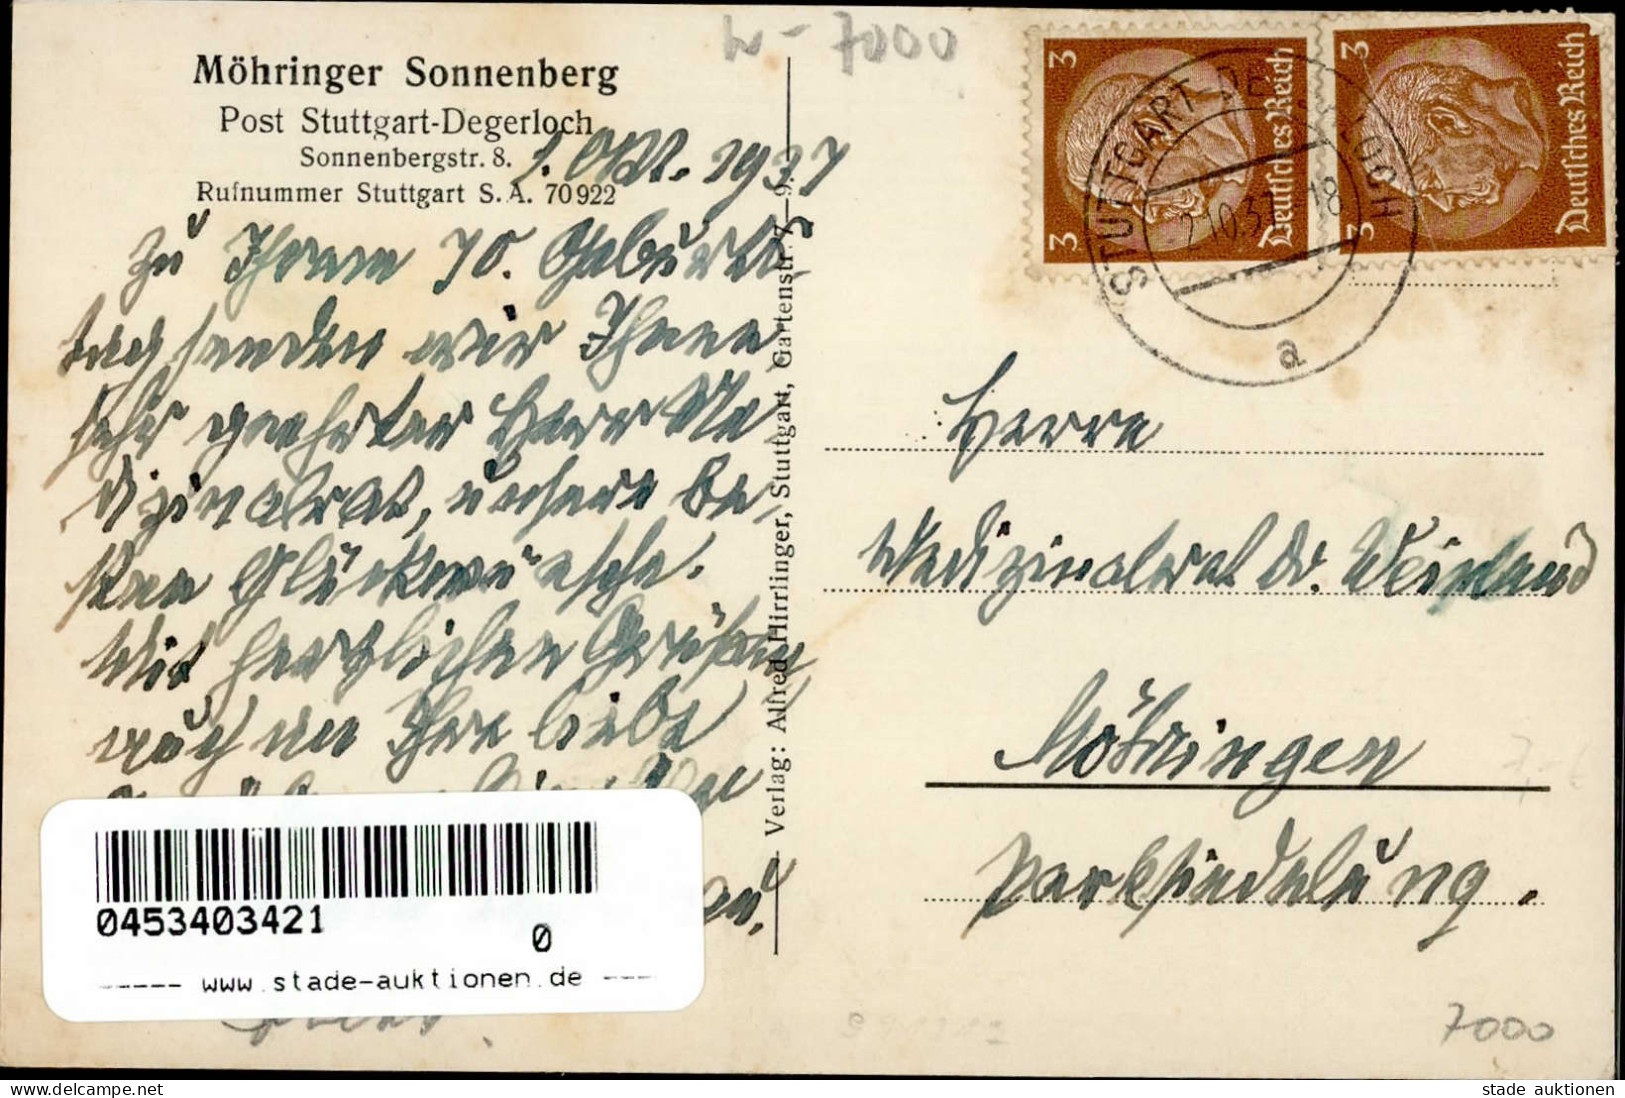 STUTTGART-DEGERLOCH (7000) - MÖHRINGER SONNENBERG I-II - Stuttgart